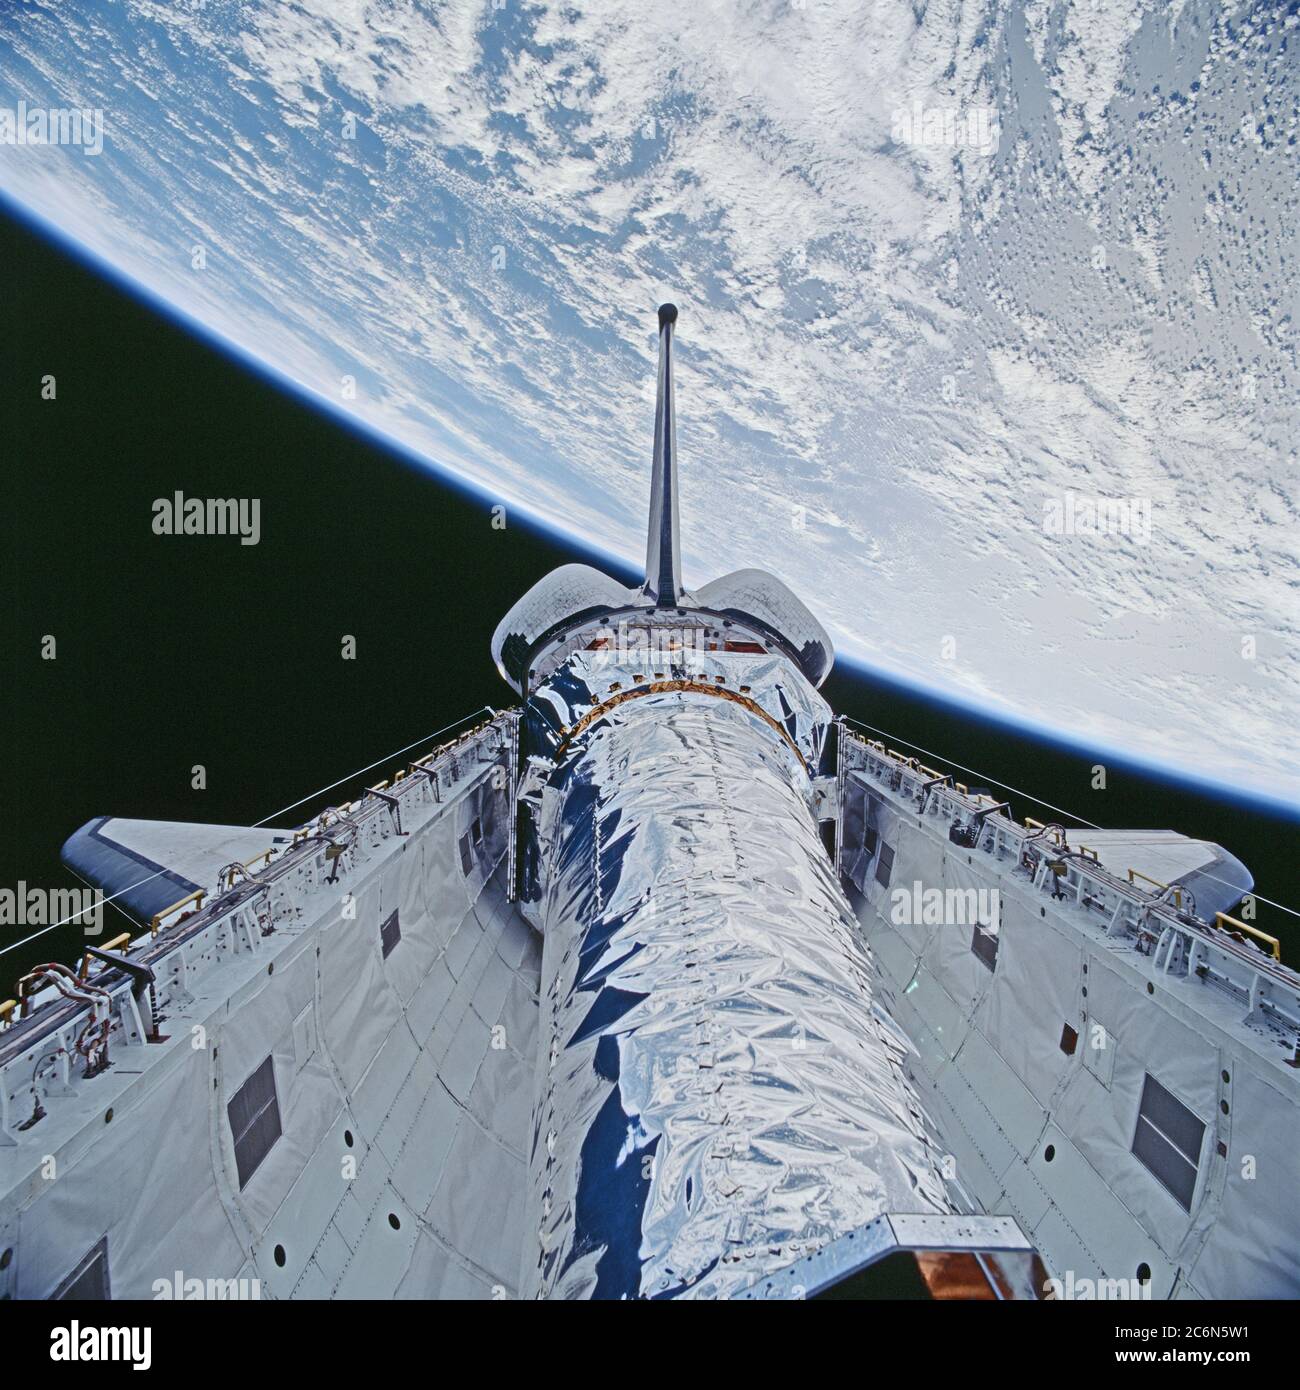 (23. Juli 1999)--- dieser 70mm-Rahmen zeigt das Chandra-Röntgenobservatorium kurz bevor es nach oben gekippt wurde, um aus der Nutzlastbucht von Columbia zu entlassen. Die Hauptaufgabe der STS-93-Crew war es, das leistungsstärkste Röntgenteleskop der Welt einzusetzen. Es war auch eine der ersten Aktionen der Astronauten, die nur wenige Stunden nach der Ankunft des Shuttles in der Erdumlaufbahn geschah. Diese Szene ist eine von einer Serie von Standbildern, die von der Crew vor und während des Einsatzes des 50,162 Pfund schweren Observatoriums aufgenommen wurden. Stockfoto